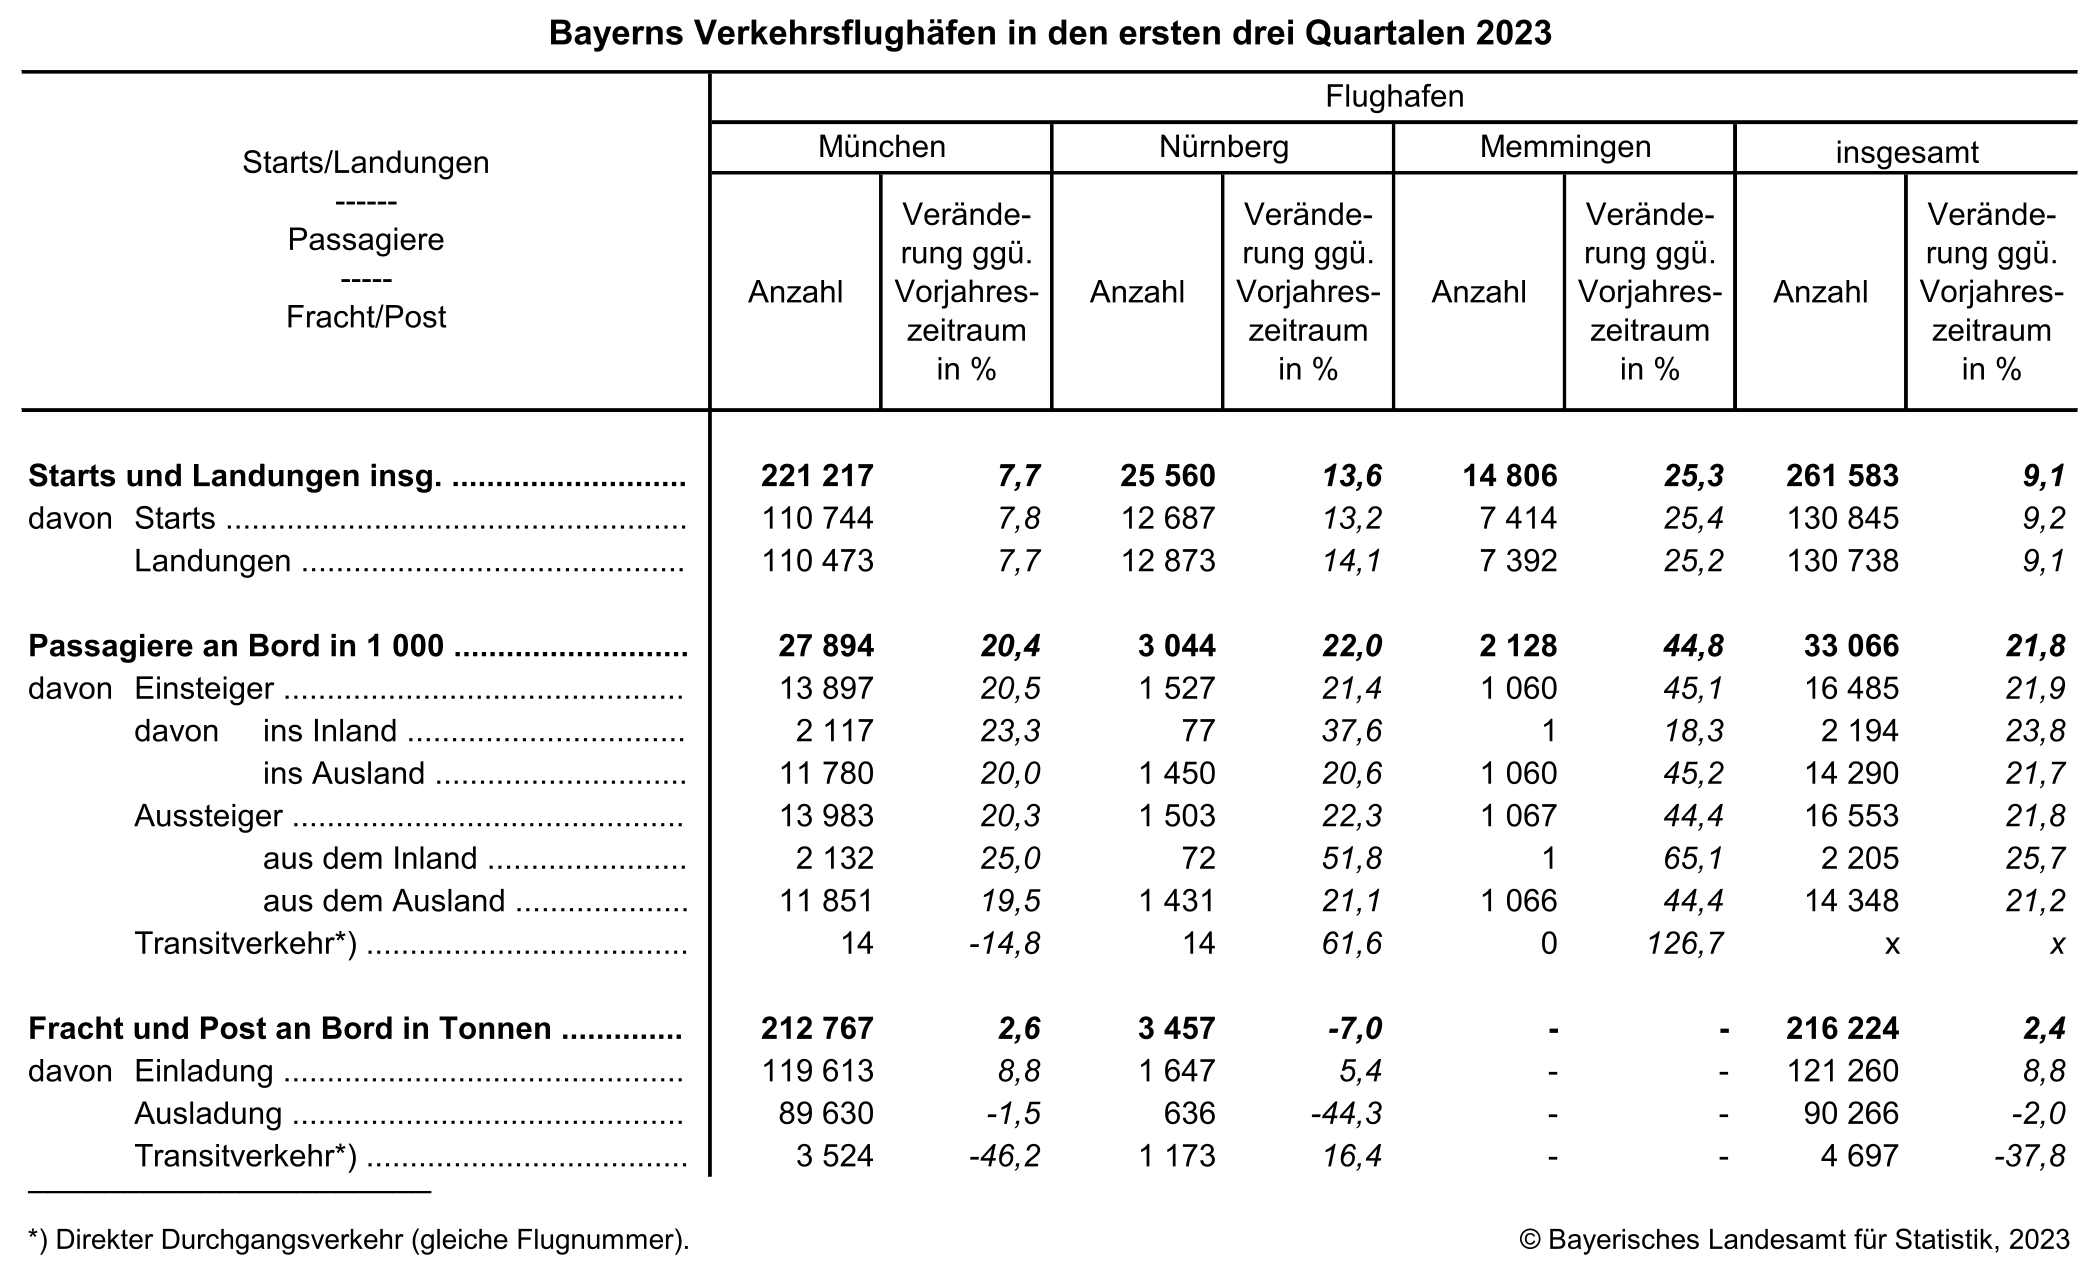 Bayern Verkehrsflughafen in den ersten drei Quartalen 2023